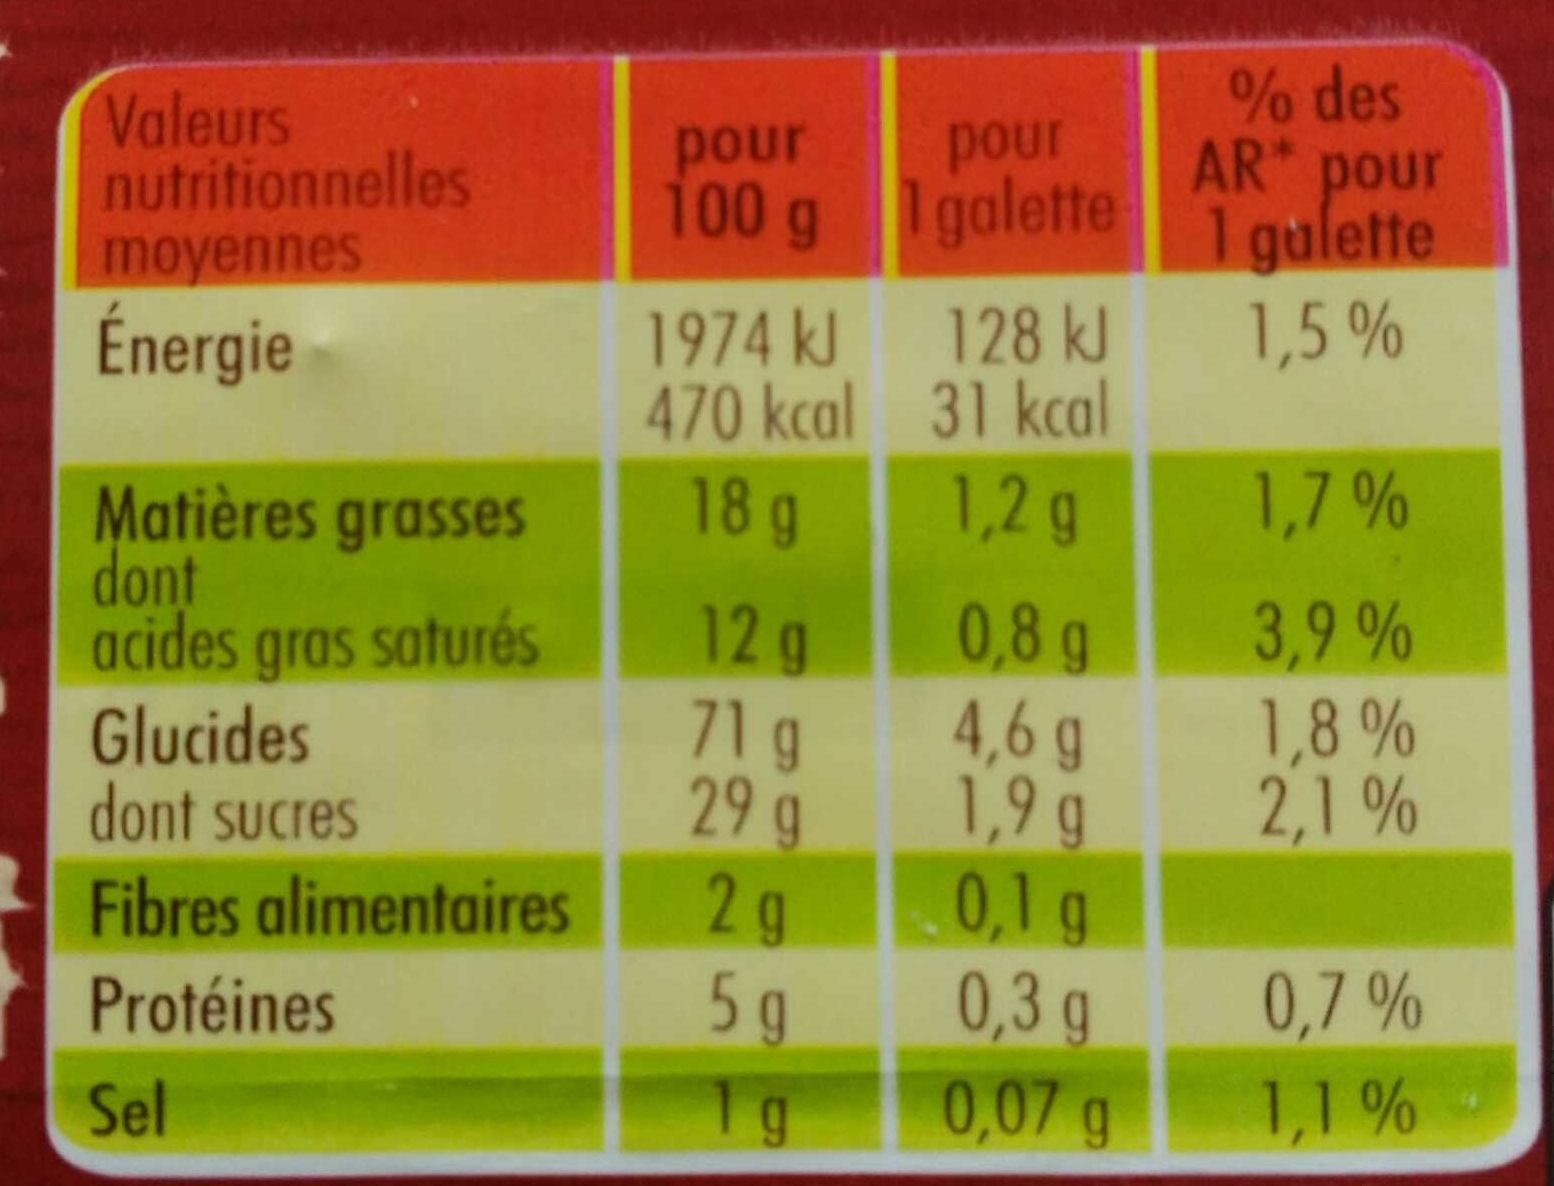 Galettes au bon beurre français éclats de caramel - Información nutricional - fr